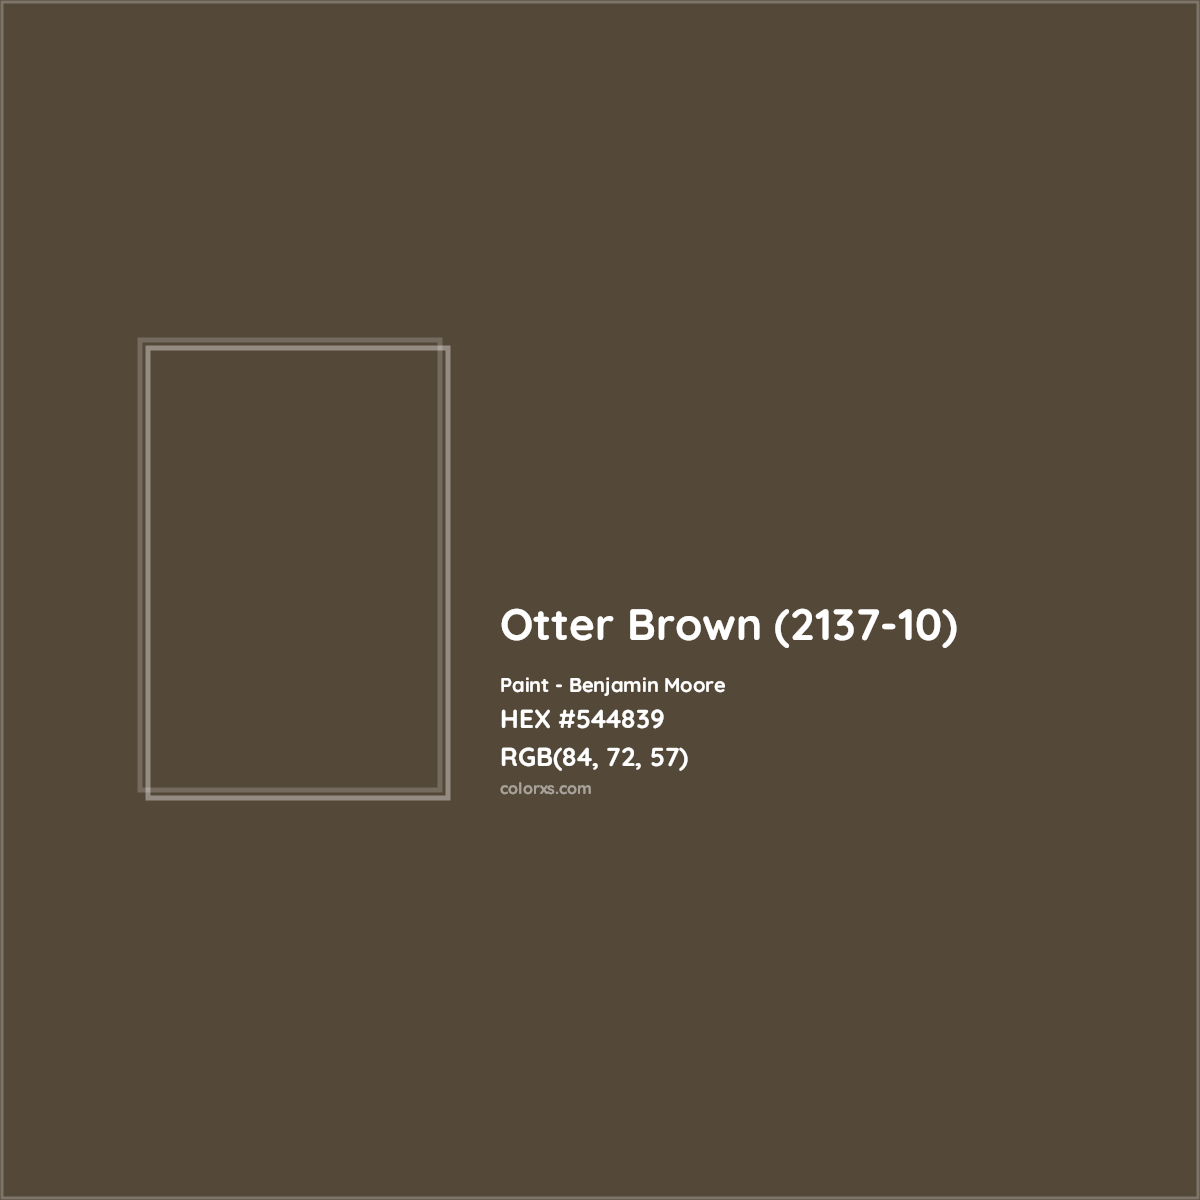 HEX #544839 Otter Brown (2137-10) Paint Benjamin Moore - Color Code